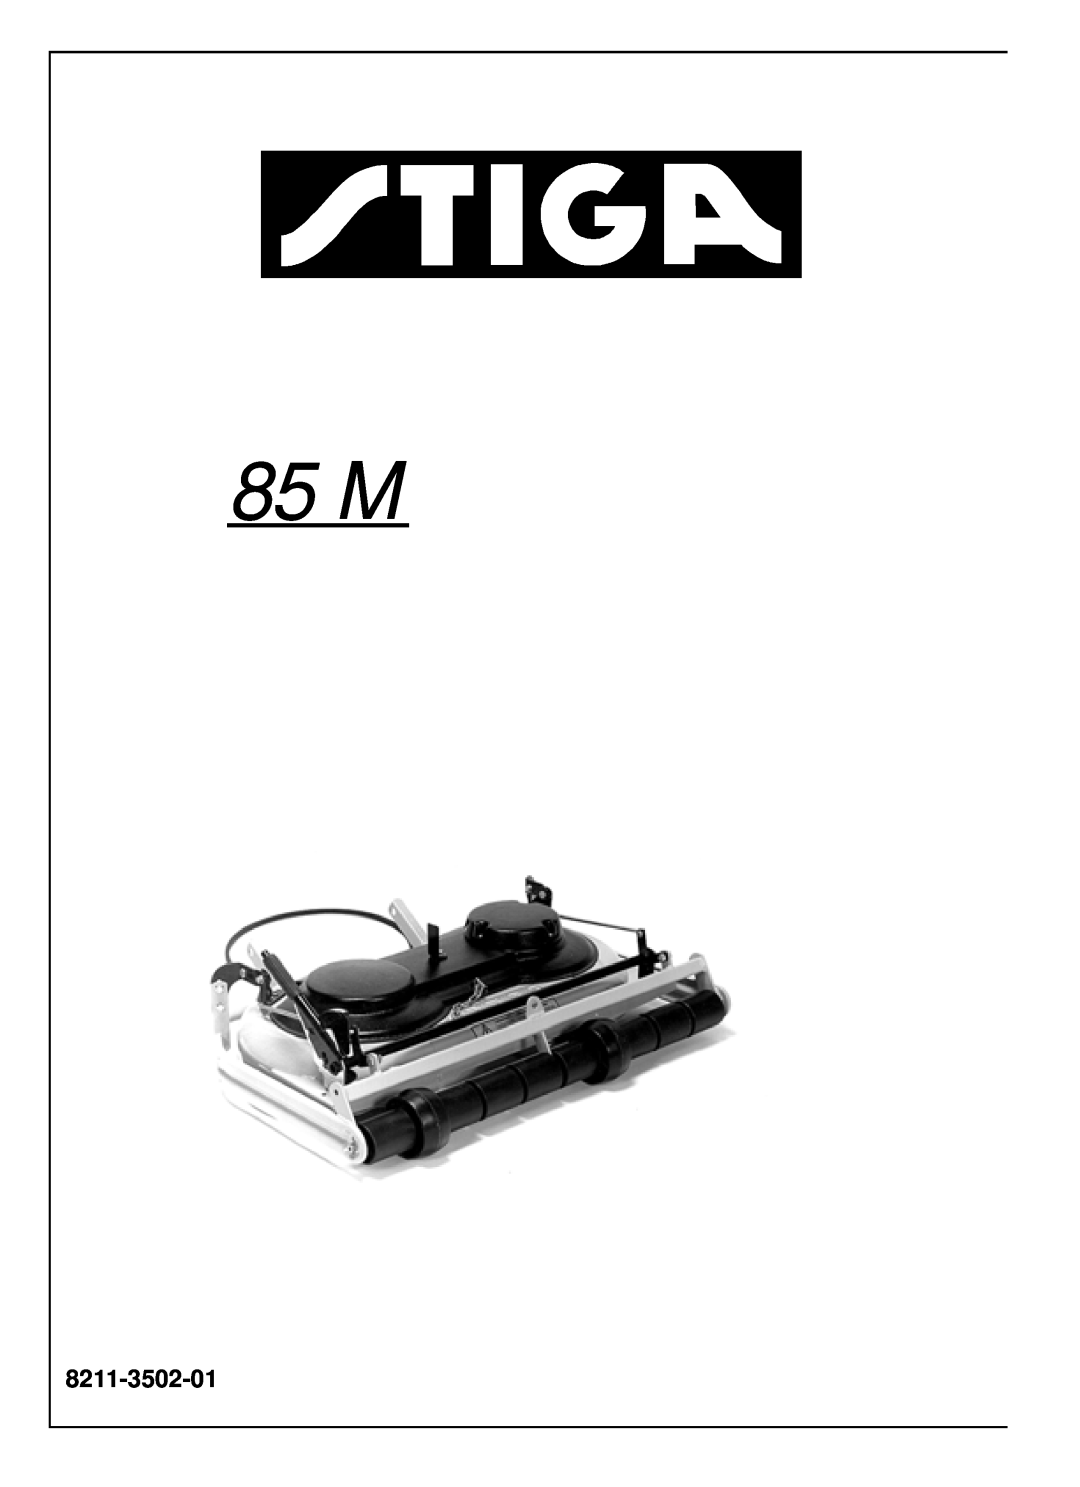 Stiga 85 M manual 8211-3502-01 